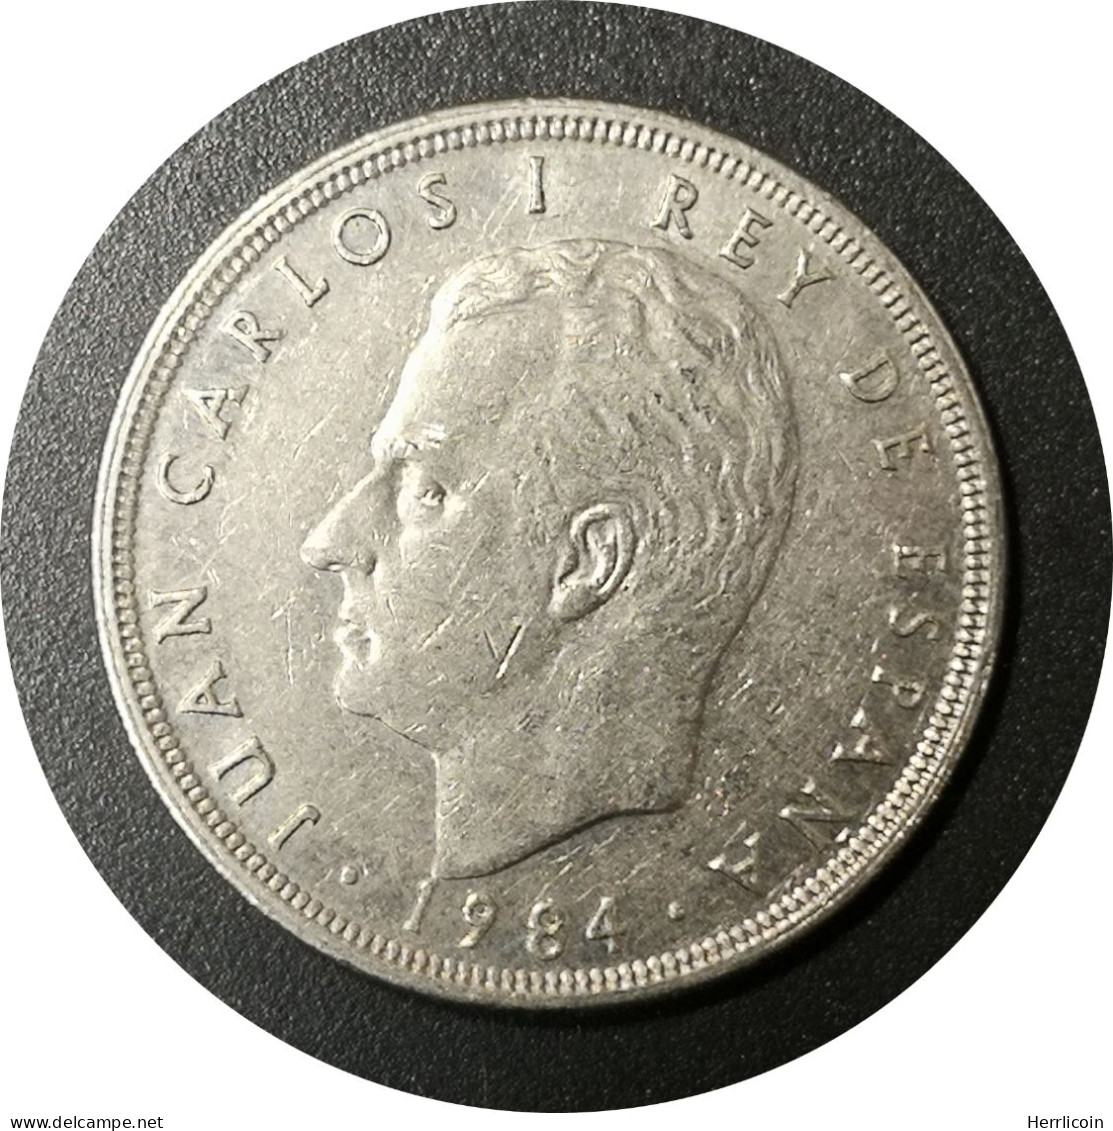 Monnaie Espagne - 1984 - 5 Pesetas Juan Carlos I M Couronné - 5 Pesetas